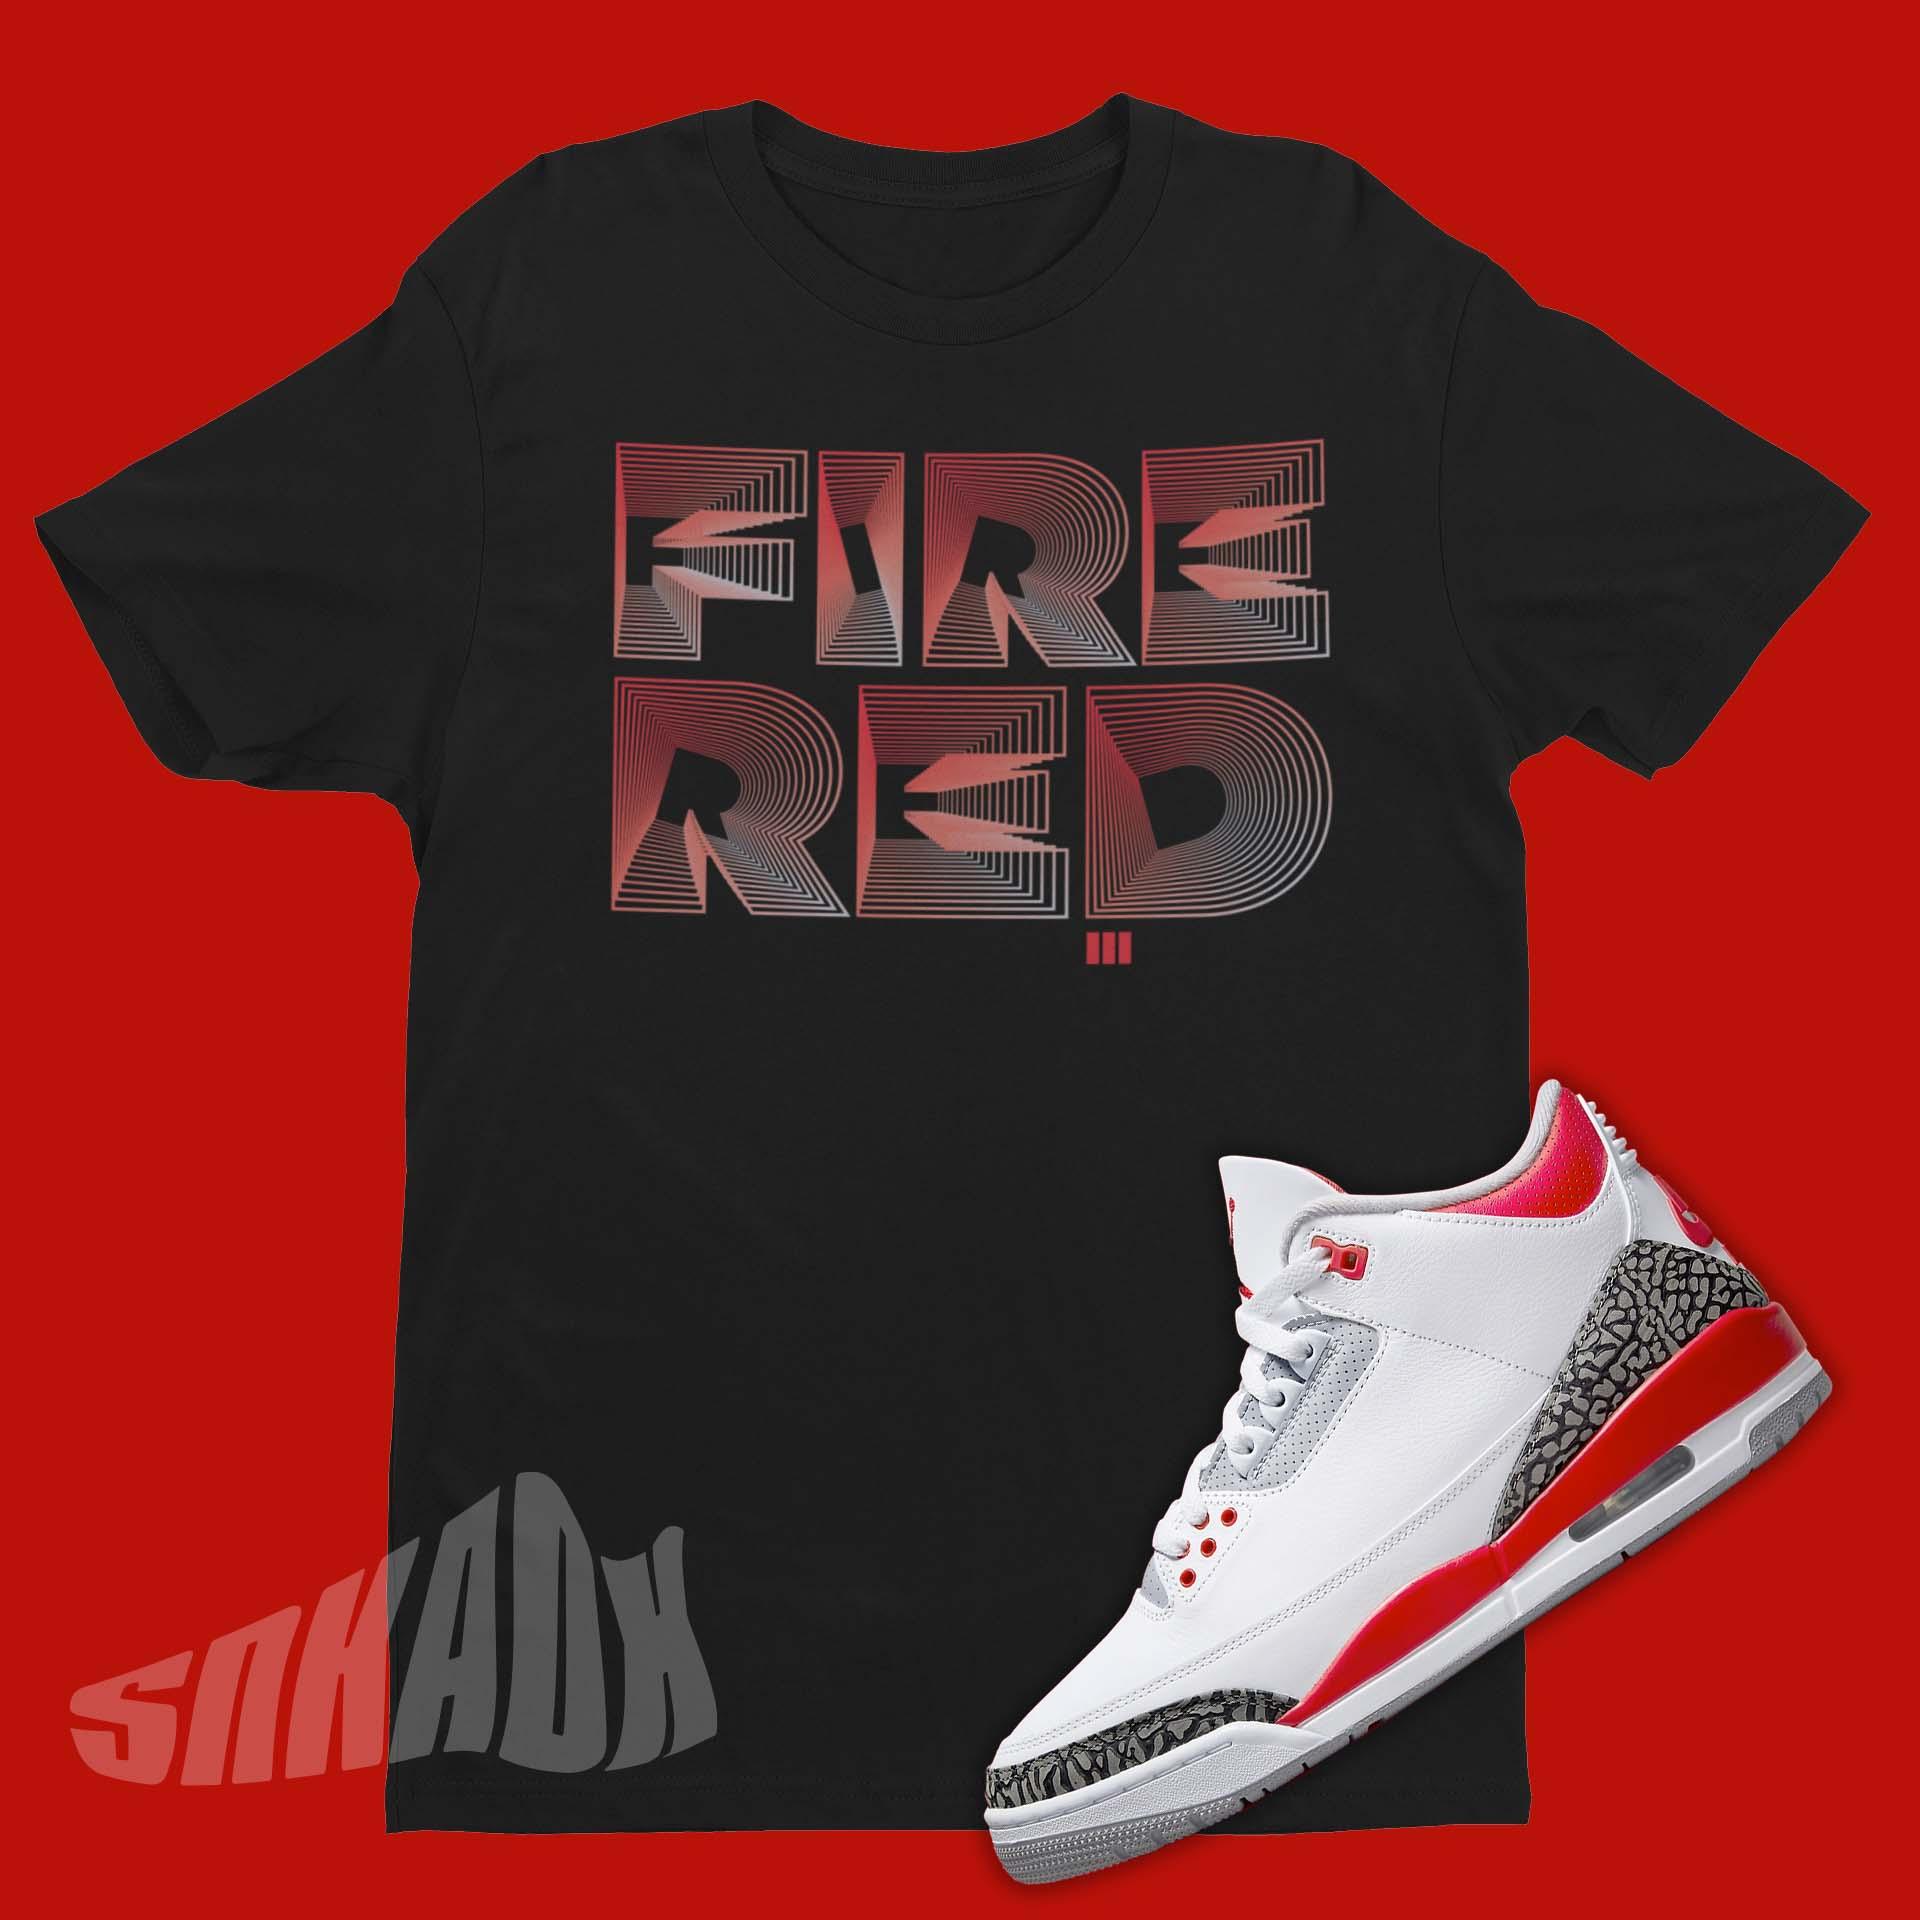 Shirt To Match Air Jordan 3 Fire Red - Jordan Match Outfit – SNKADX